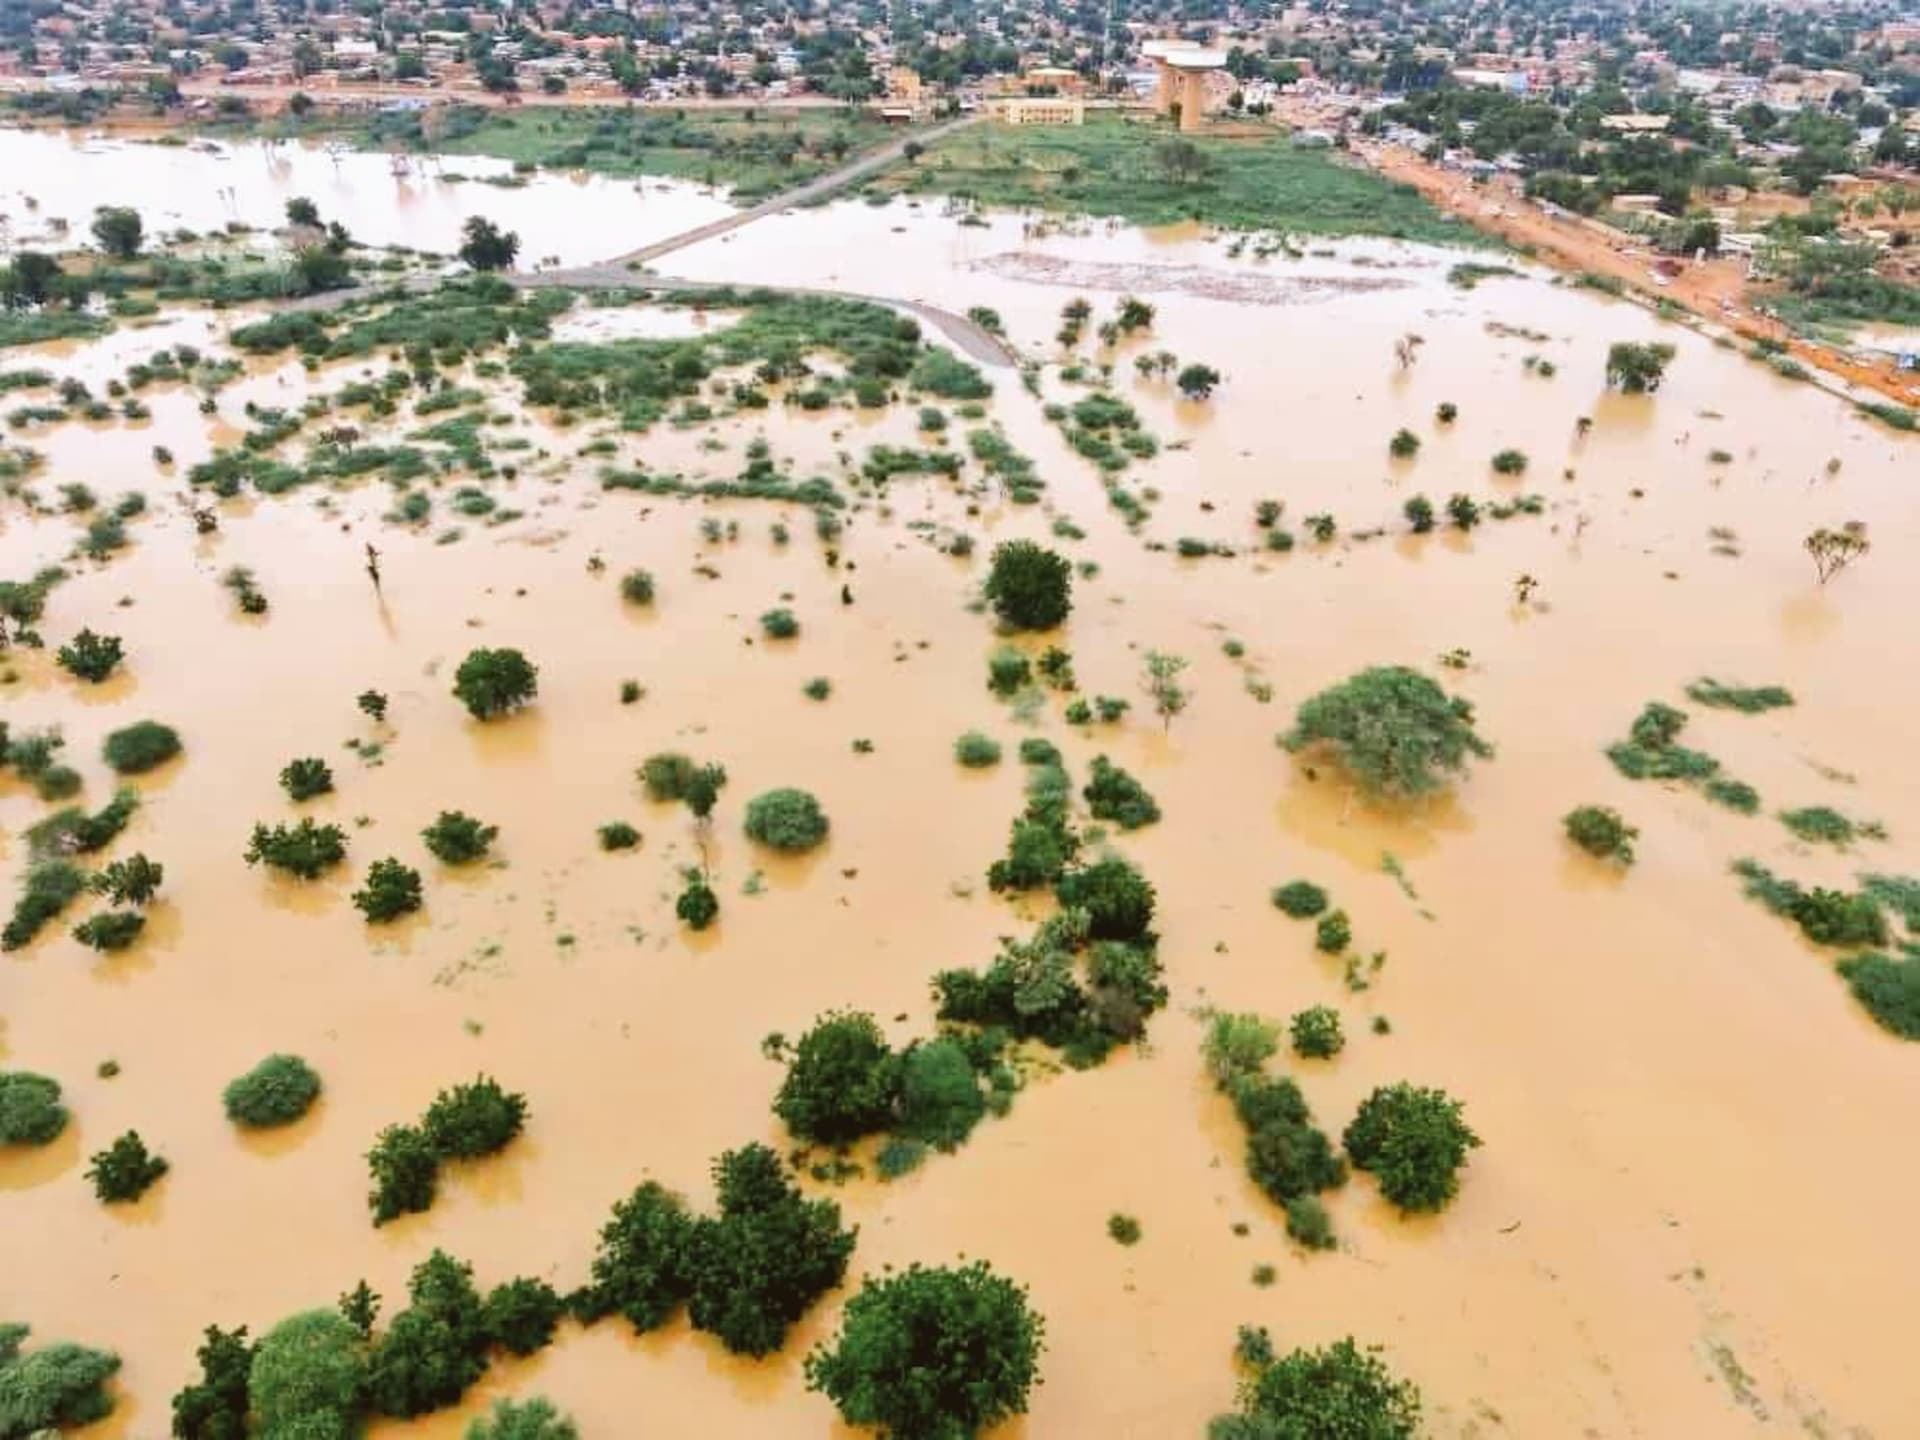 Lidé v zaplavených oblastech budou potřebovat rozsáhlou pomoc.